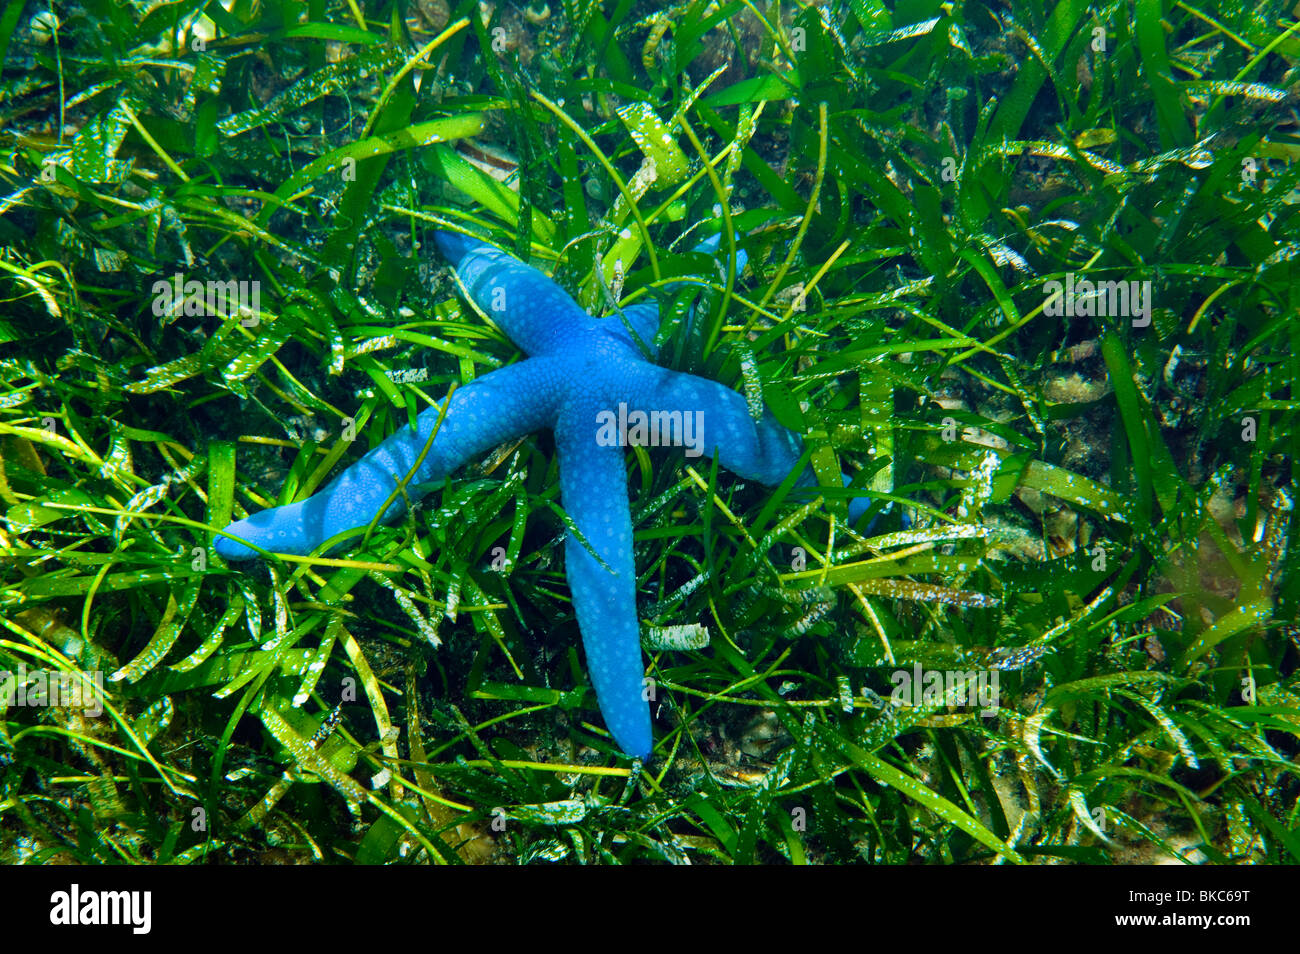 Seastar bleu star étoile de mer linckia Laevigata les herbiers vert herbe sauvage faune de récif de la mer la vie sous l'eau plongée plongée sealife Banque D'Images